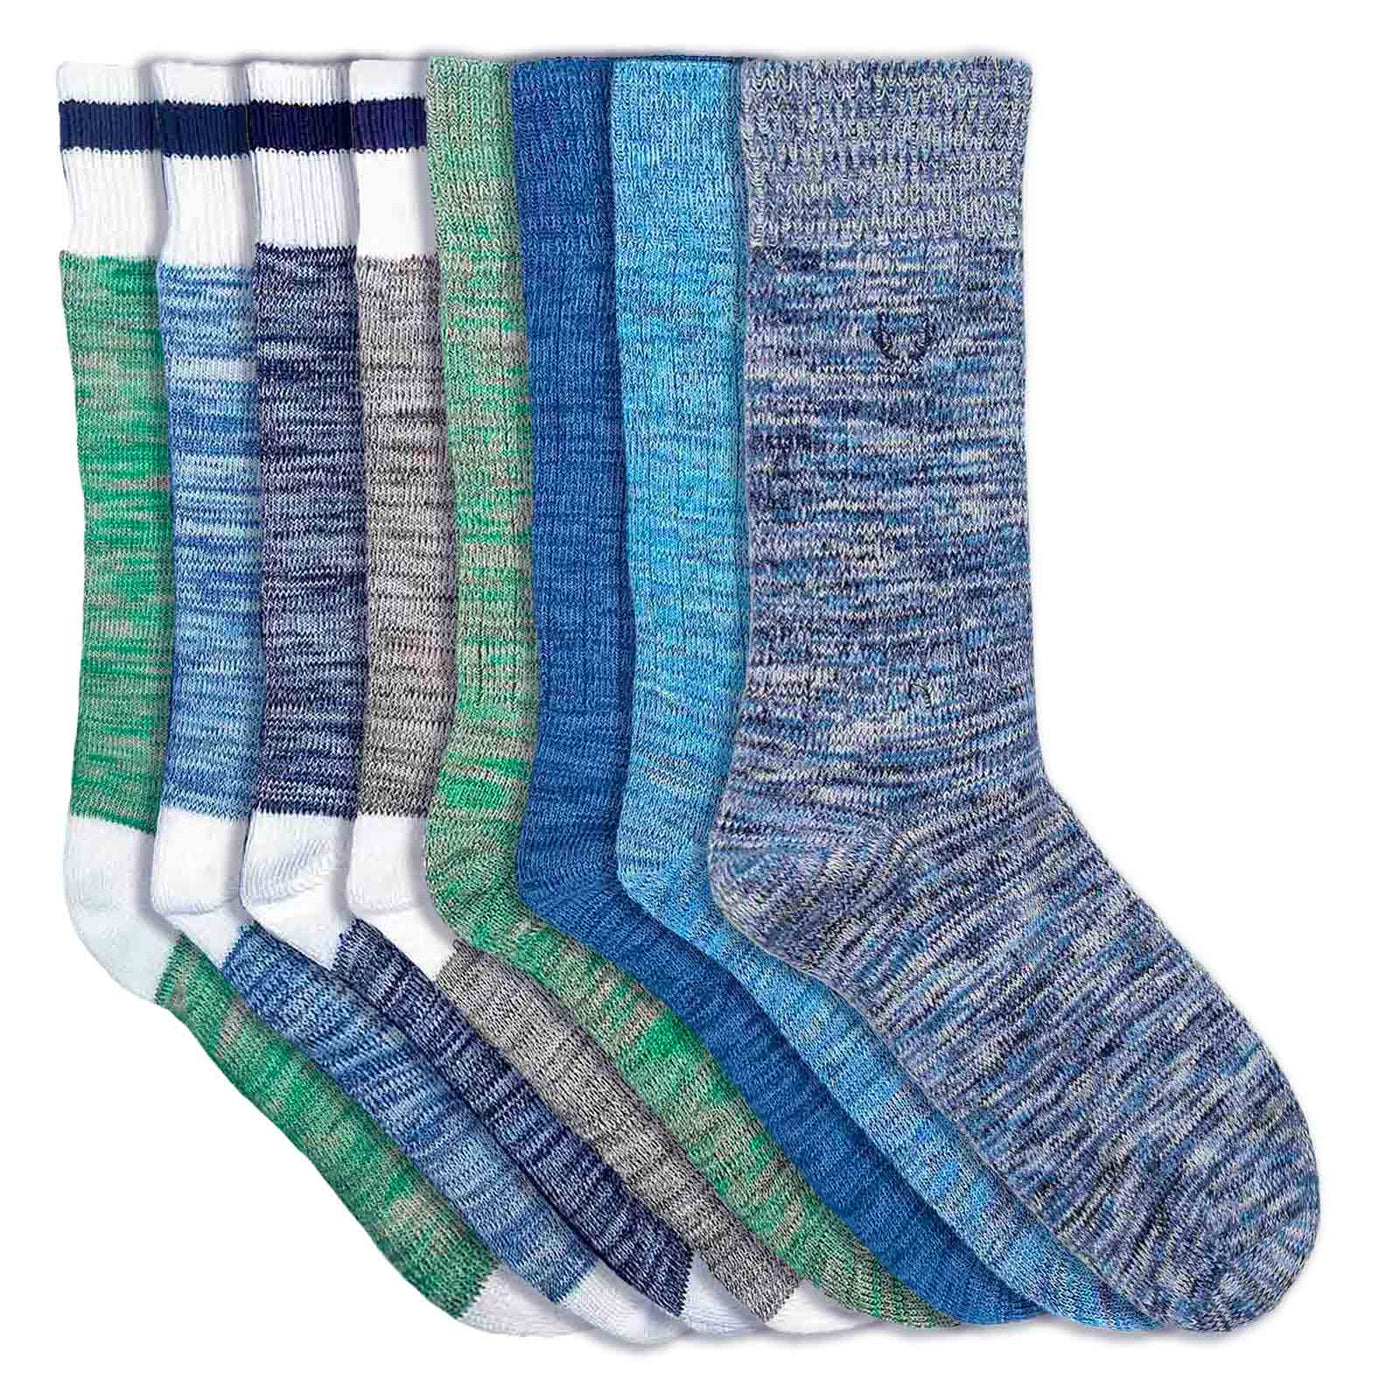 8 organic cotton socks for men - melange blue or green